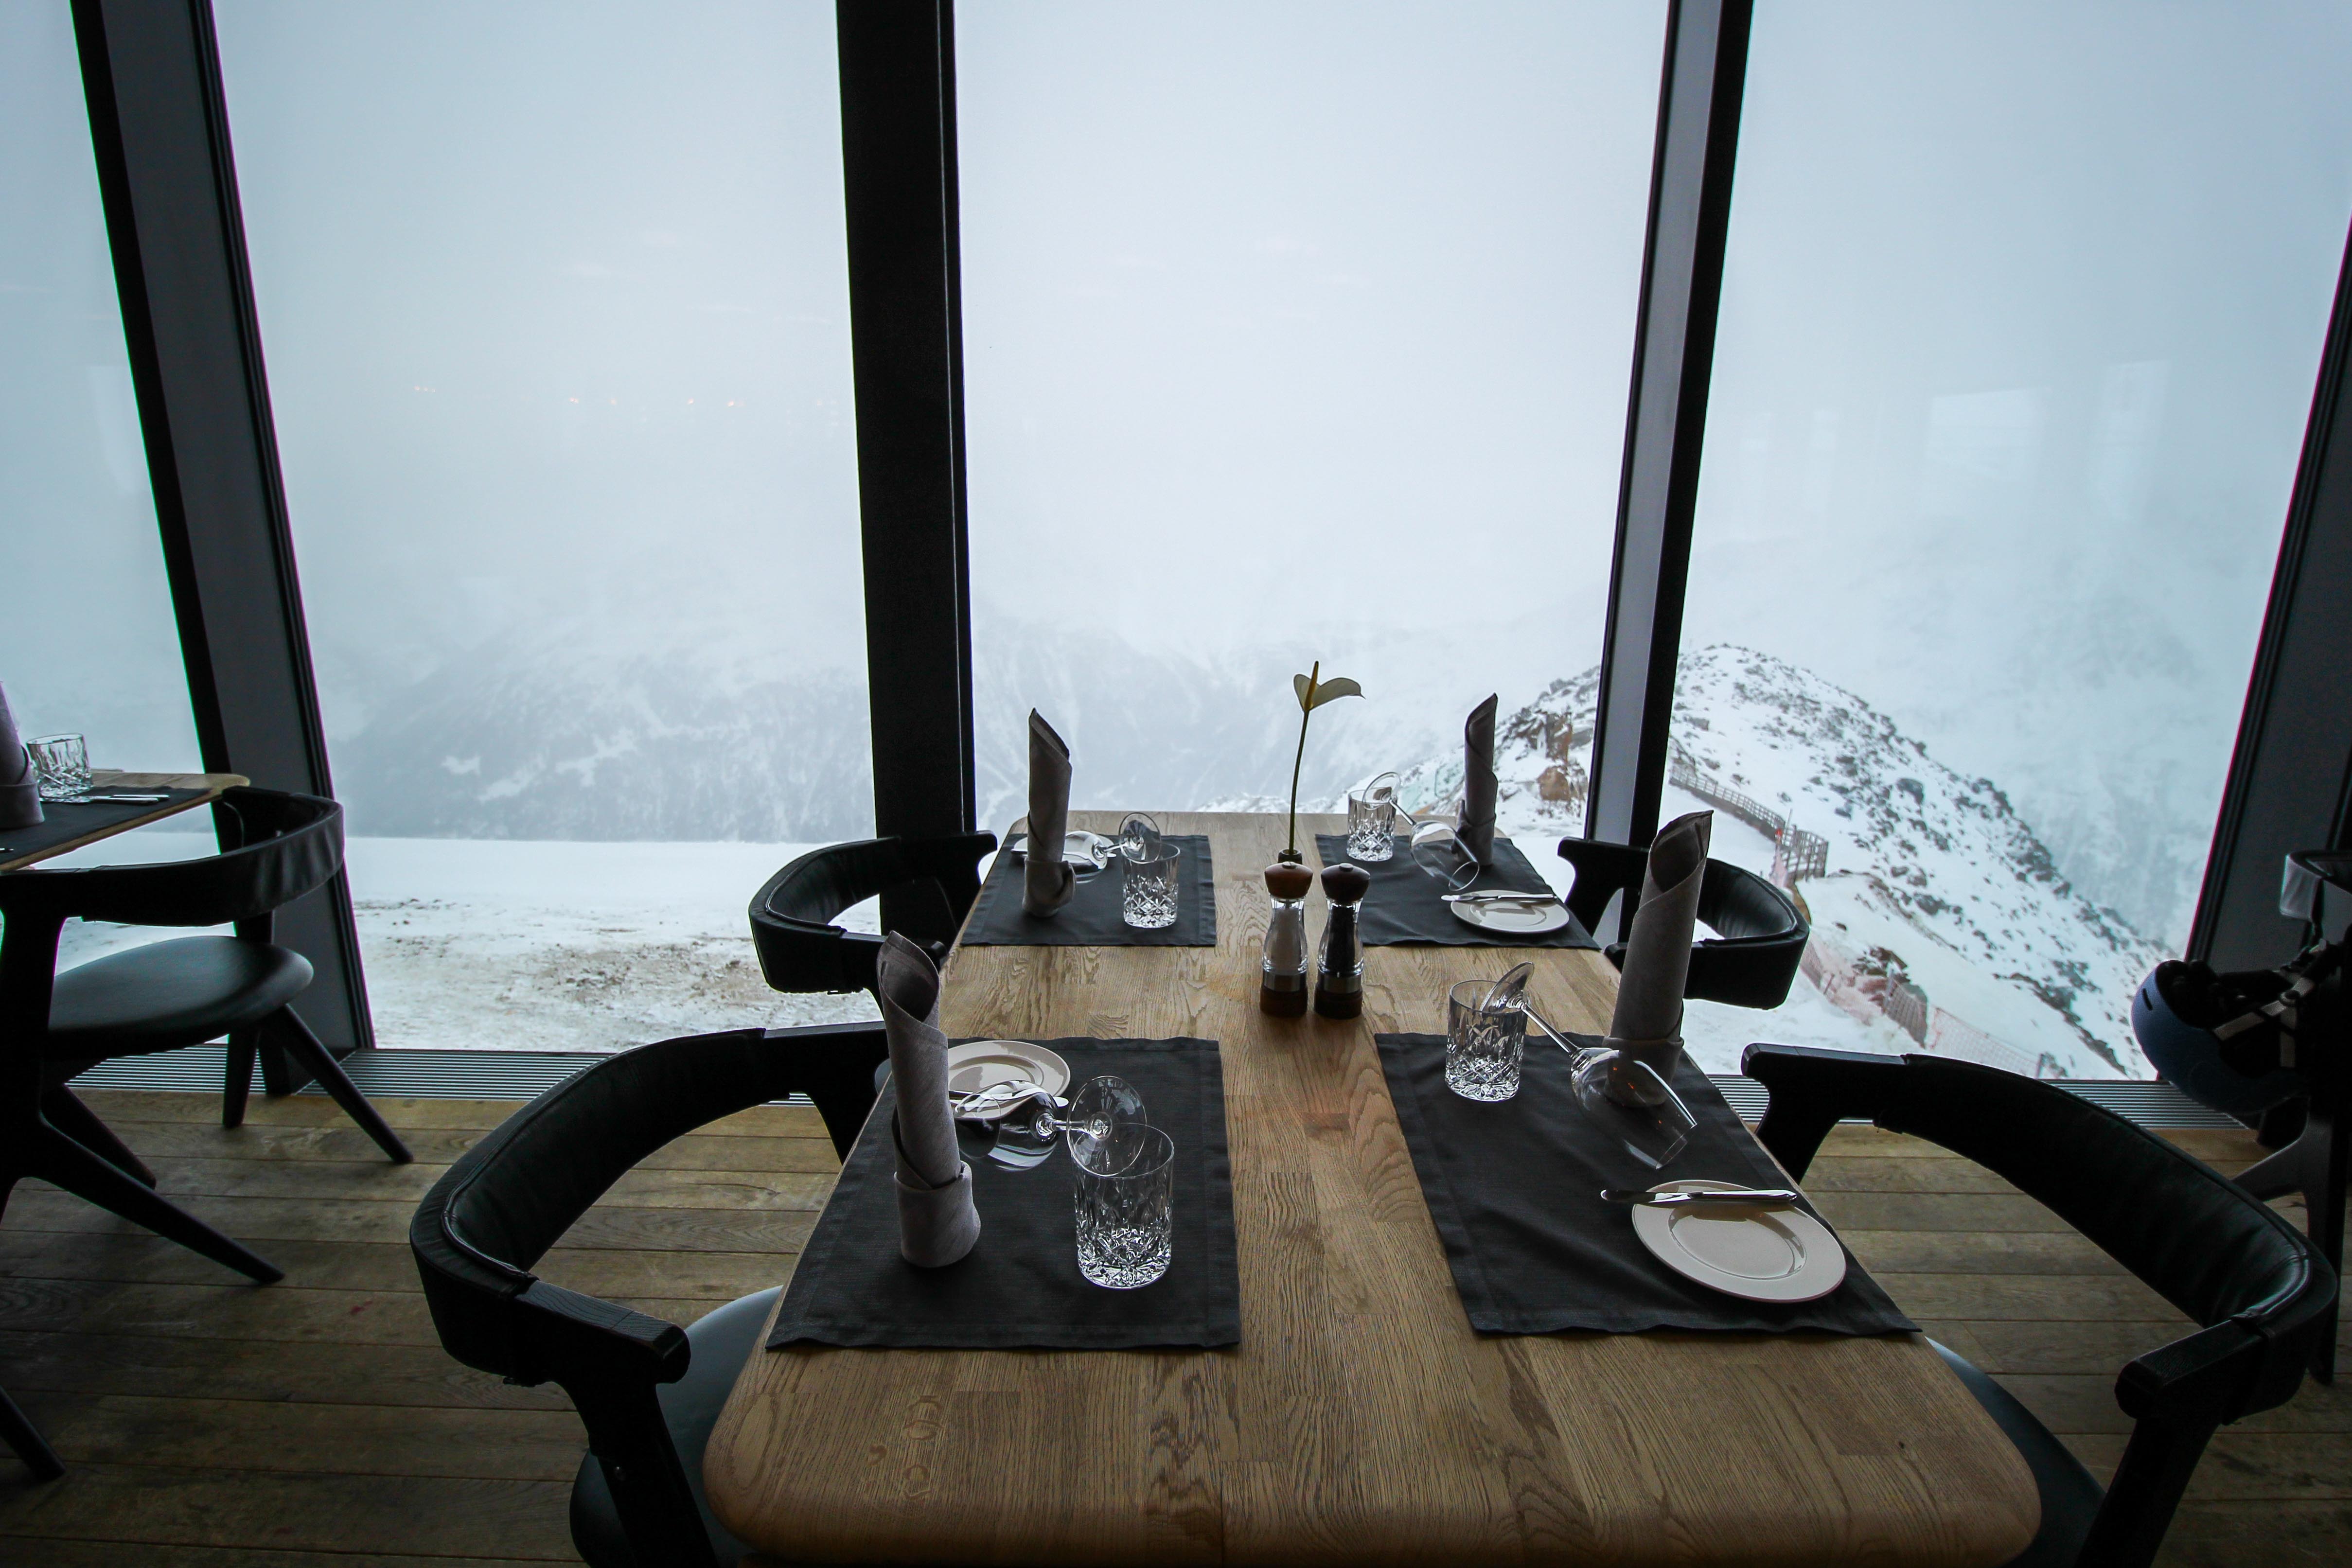 Gourmet-Restaurant Gipfelaussicht Tisch iceQ Sölden Tirol Österreich James Bond Location Spectre 3000m Gaislachkogl Reiseblog